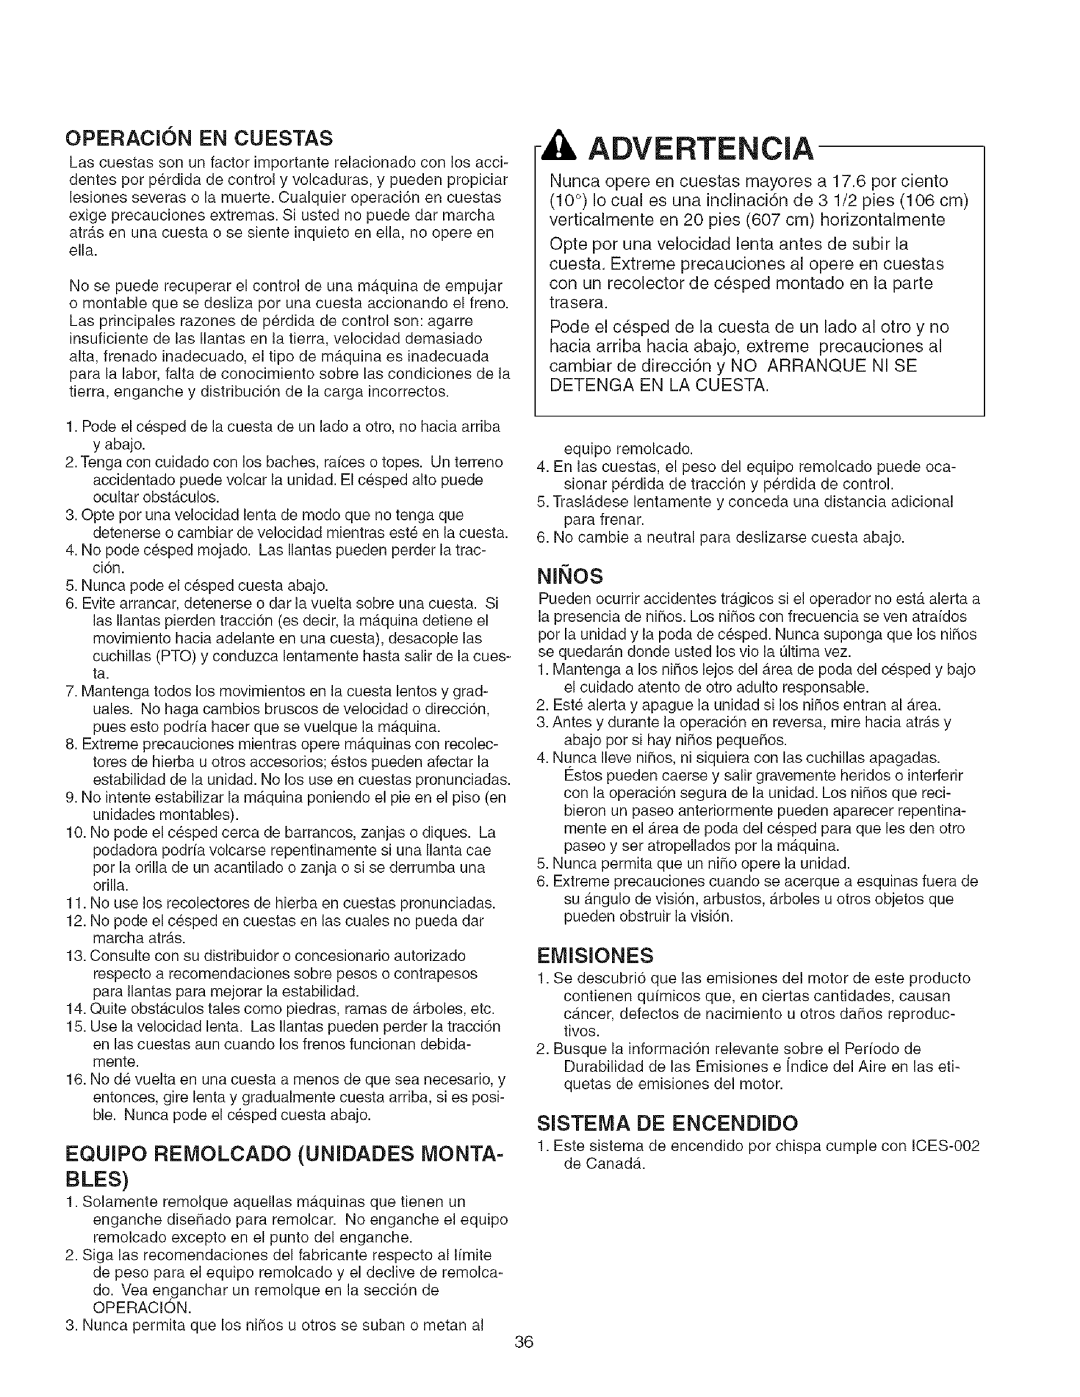 Craftsman 107.27768 manual Advertencia, Operacion En Cuestas, EQUIPO RElVlOLCADO UNIDADES MONTA, Niqos 